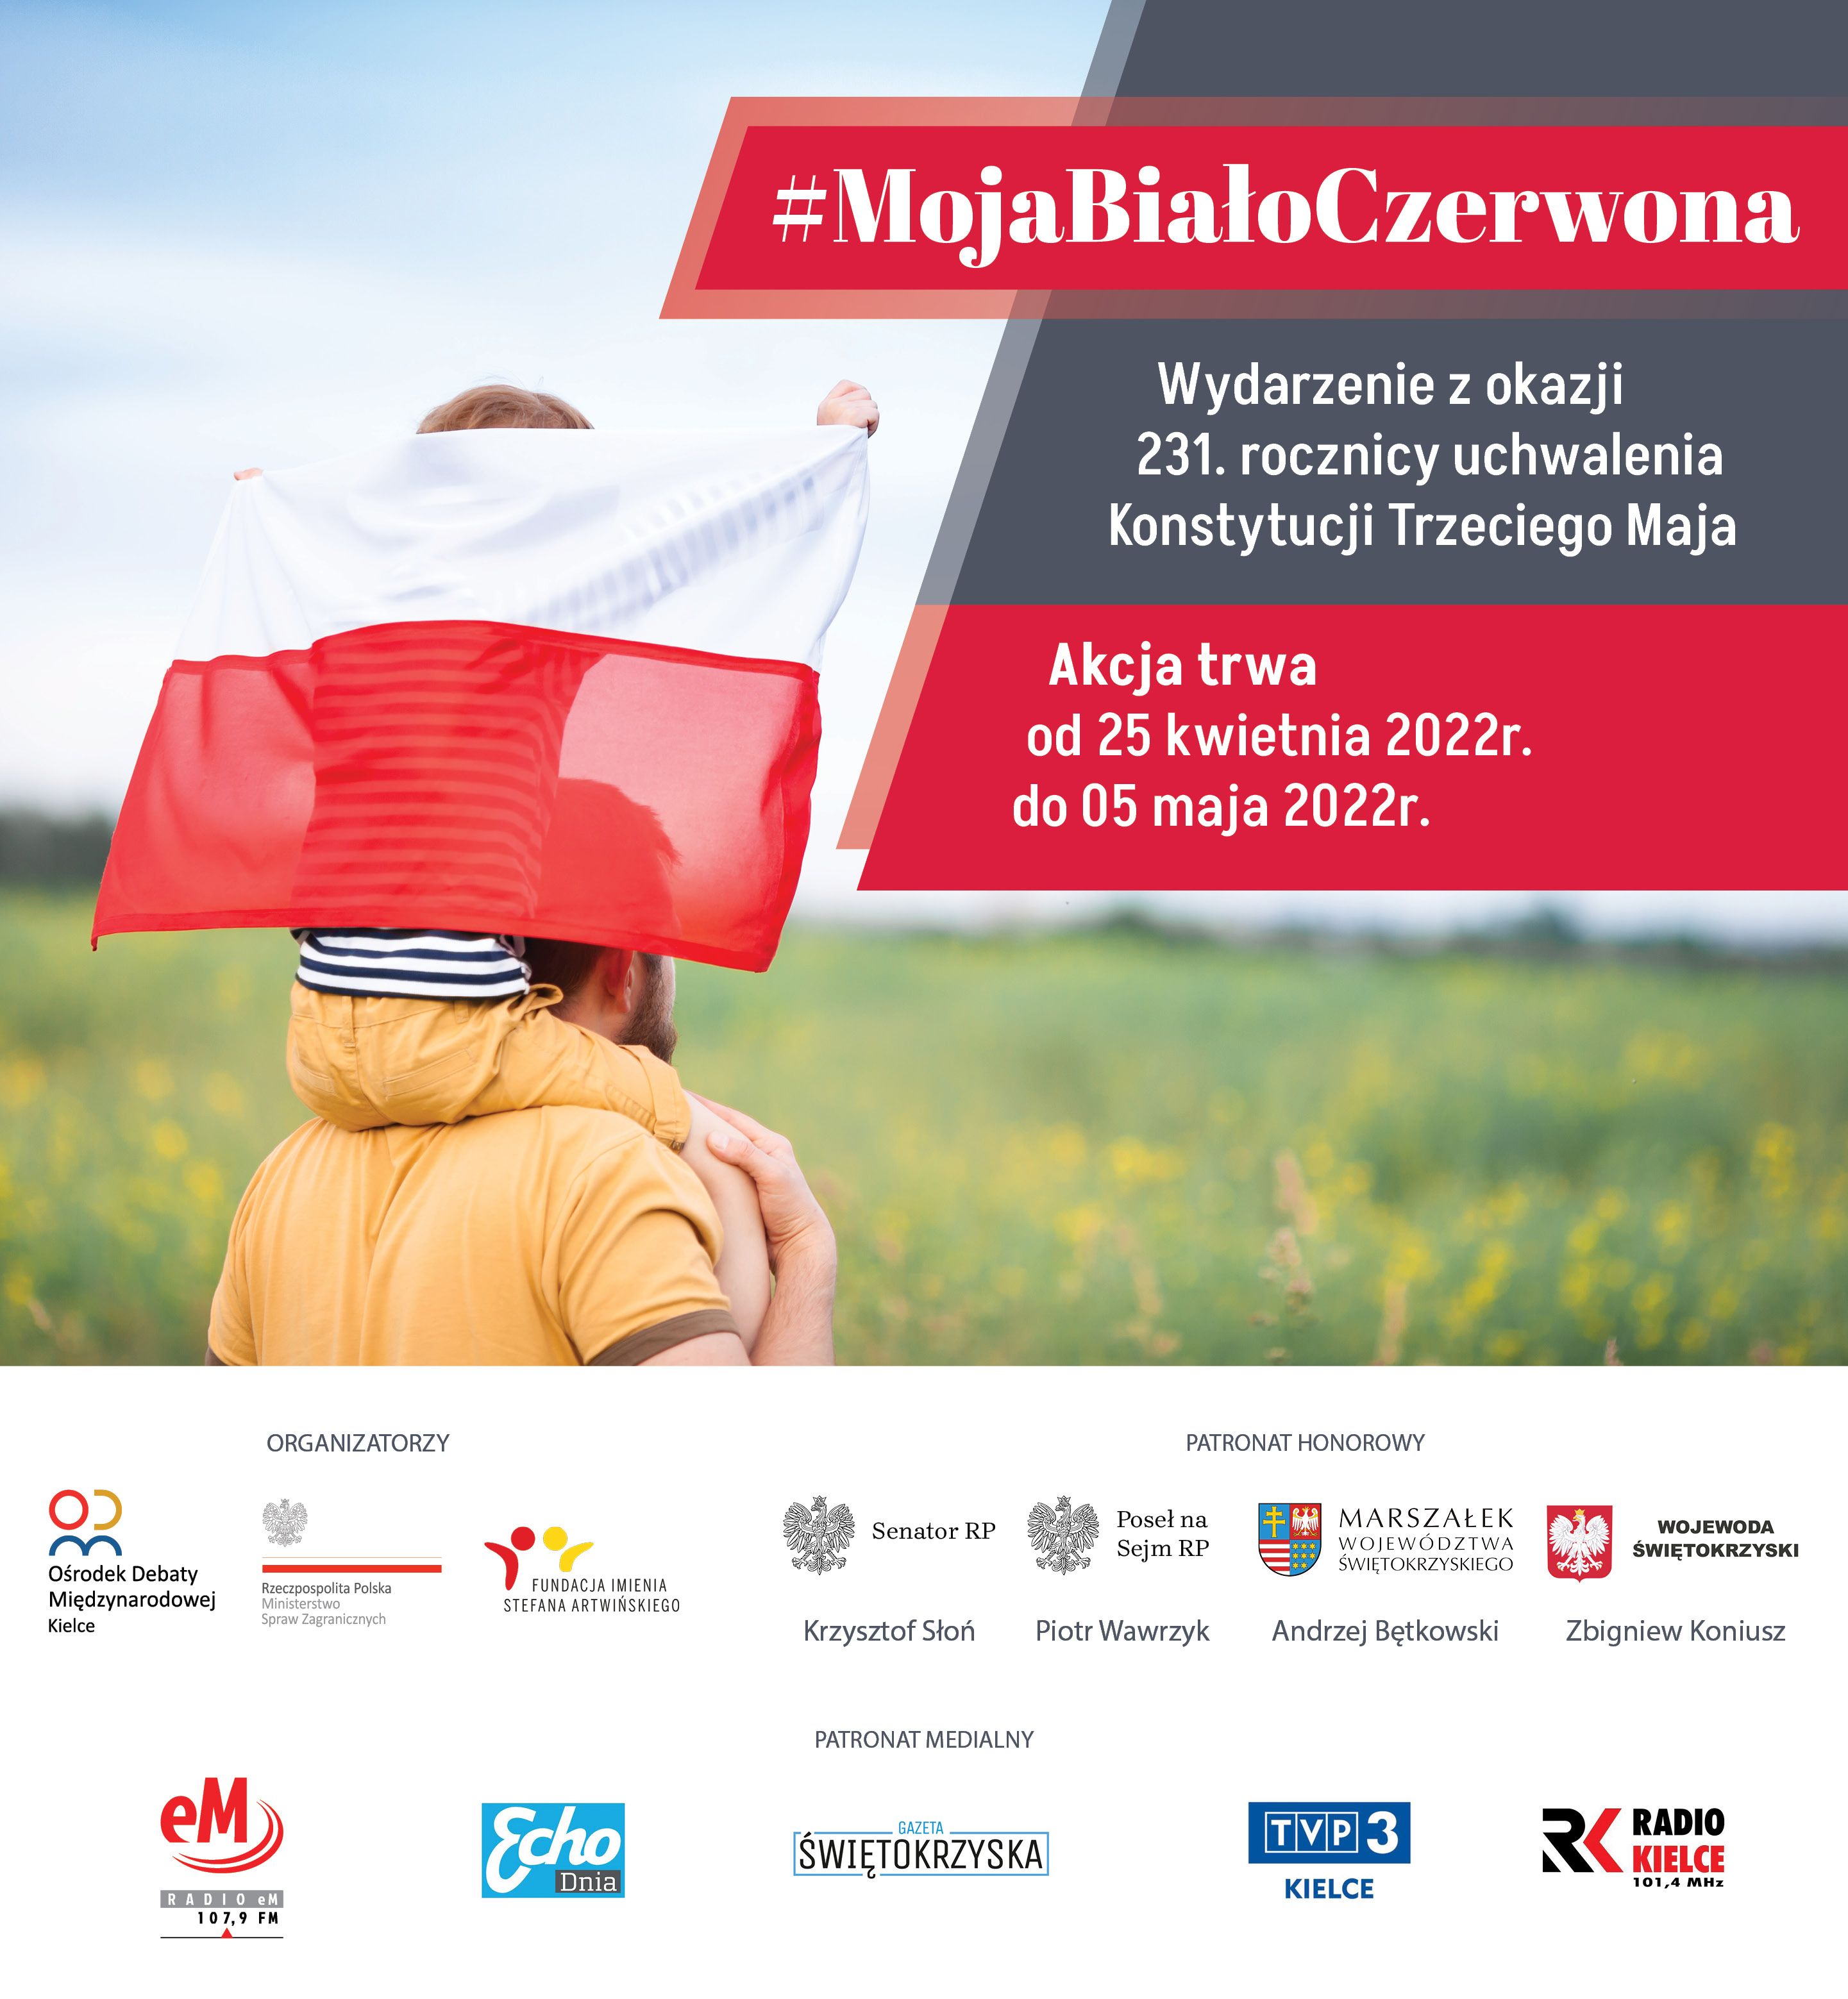 Plakat informacyjny: Zachęcamy  do włączenia się w drugą edycję akcji #MojaBiałoCzerwona. Wydarzenie organizowane jest w ramach  przypadającej w tym roku 231. rocznicy uchwalenia Konstytucji Trzeciego Maja i trwa od 25.04.2022 r. do 05.05.2022 r.